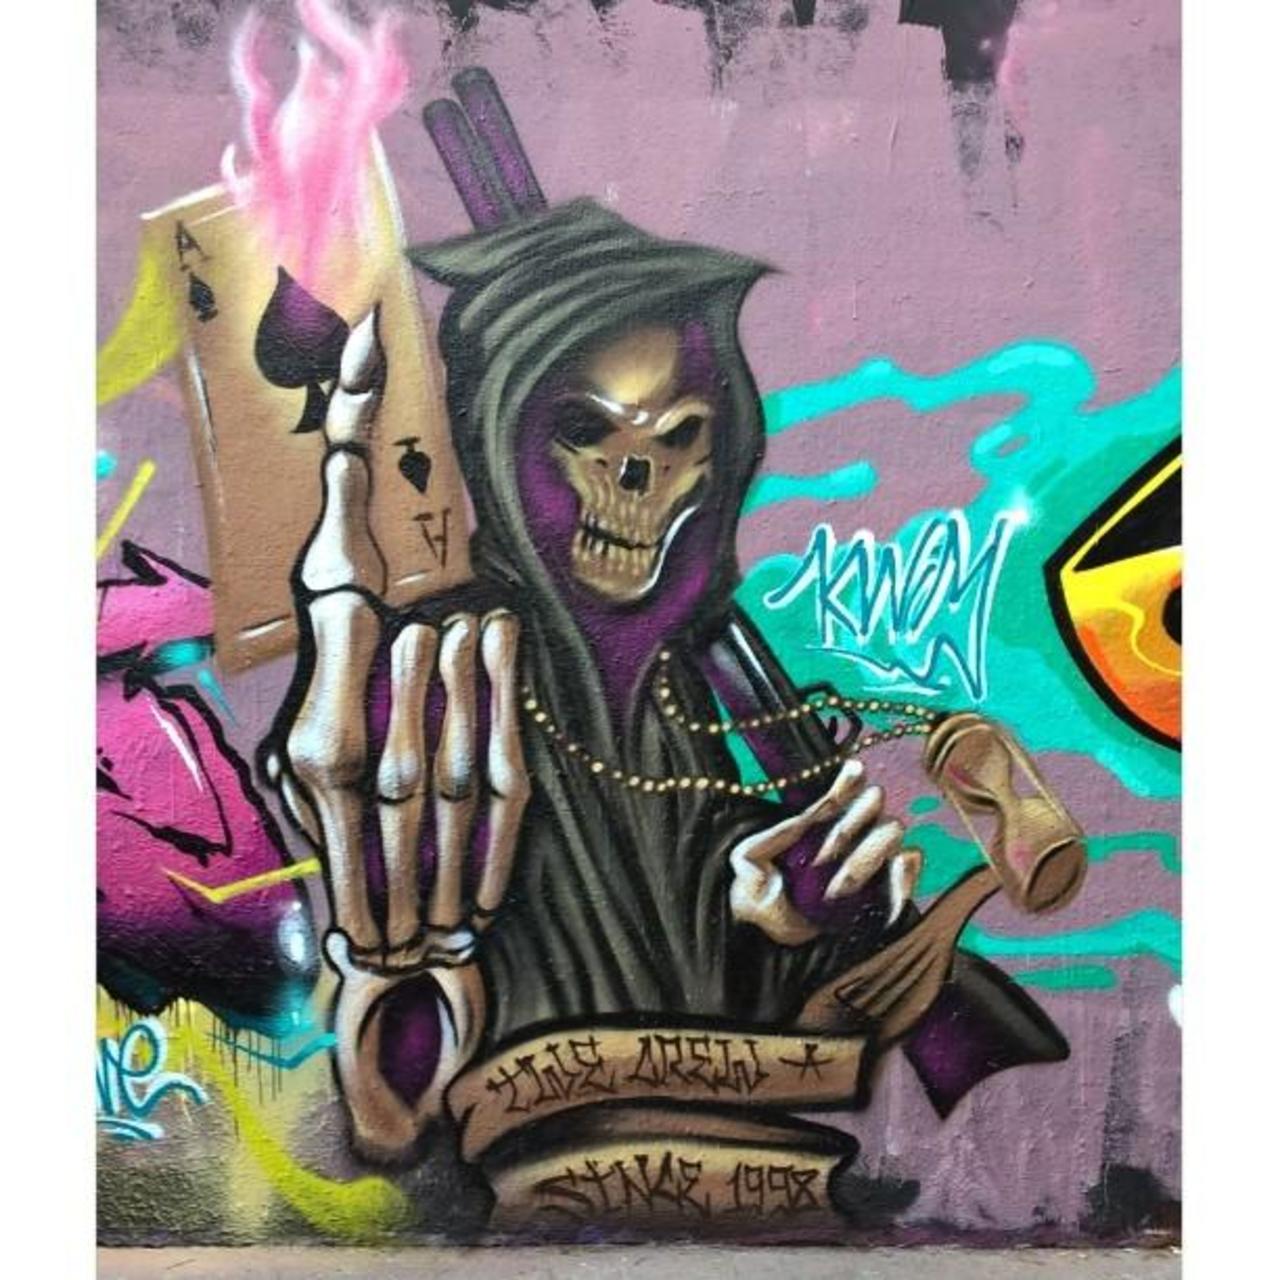 KWIM
#TWEcrew #streetart #graffiti #graff #art #fatcap #bombing #sprayart #spraycanart #wallart #handstyle #letteri… http://t.co/eKFkgBttGs